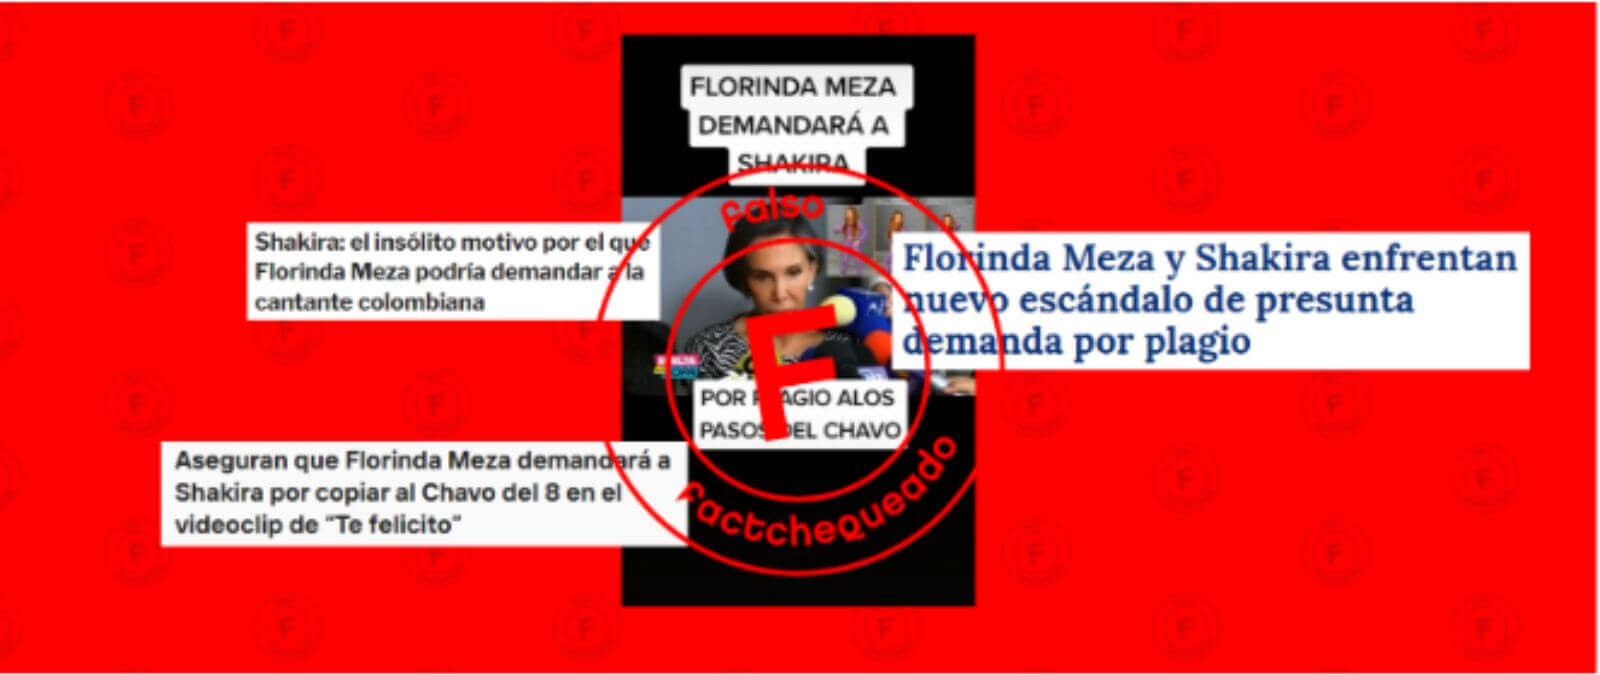 Es falso que Florinda Meza demandará a Shakira por pasos de El Chavo del Factchequeado com